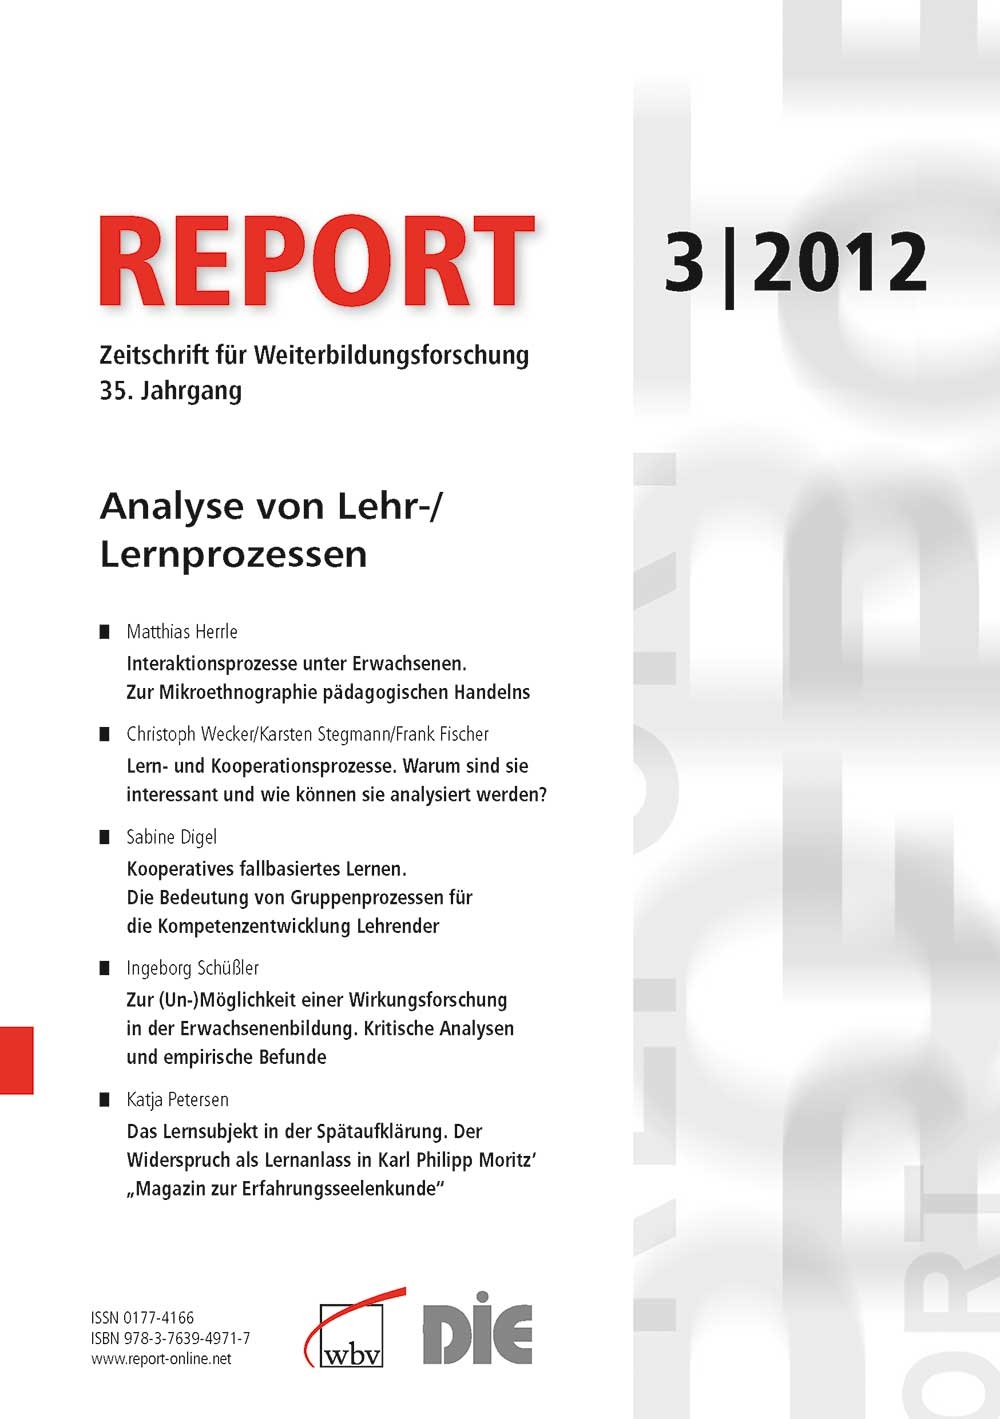 REPORT - Zeitschrift für Weiterbildungsforschung 03/2012